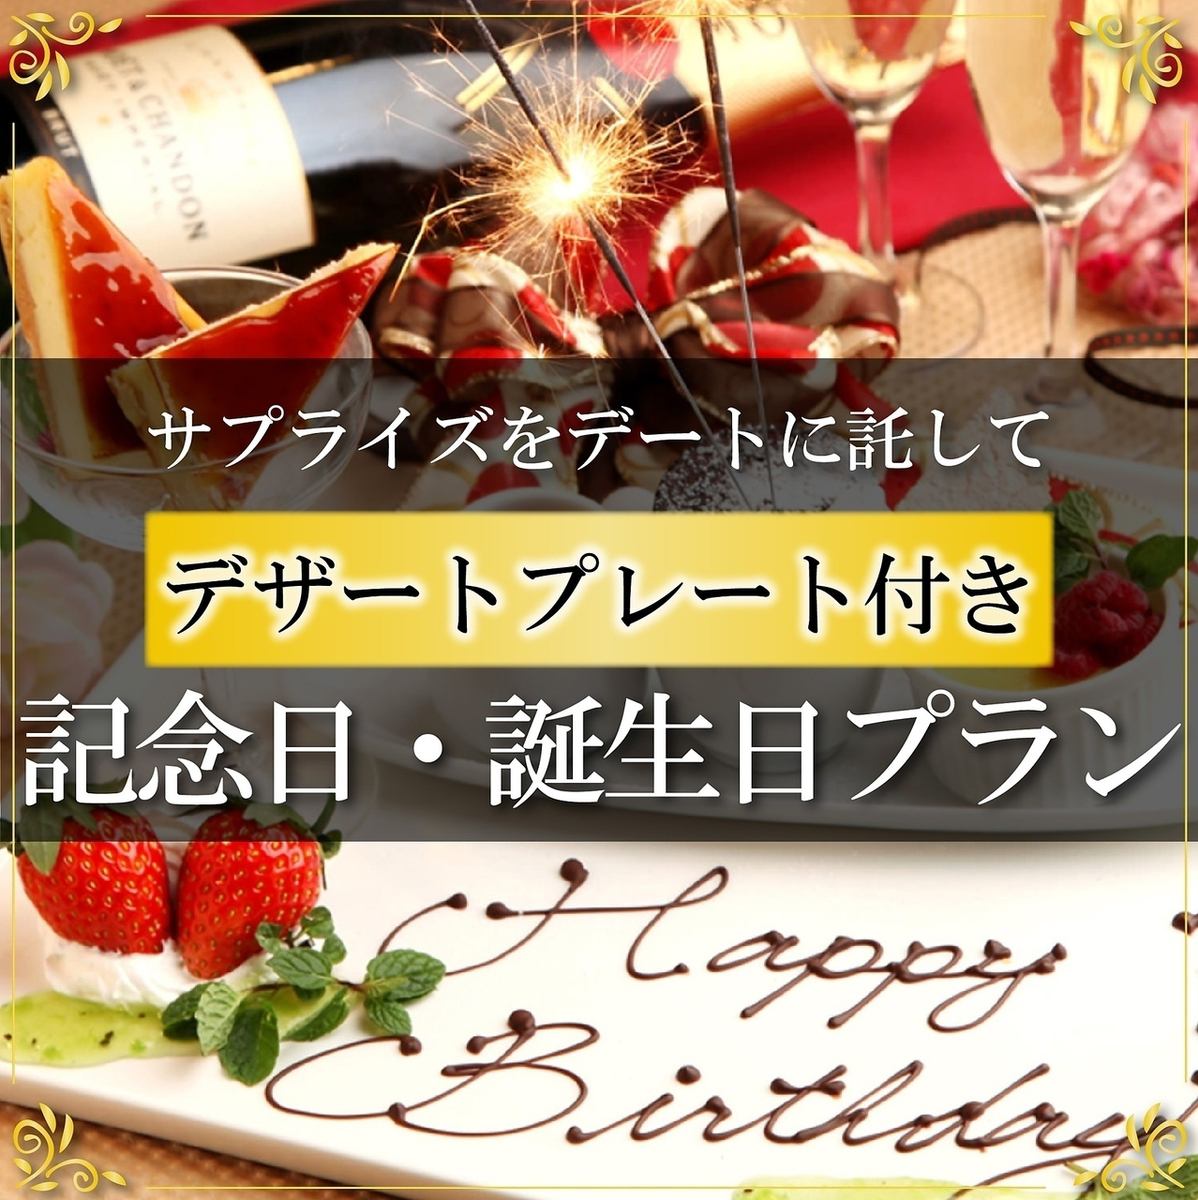 生日和紀念日會提供特別蛋糕或氣泡酒♪